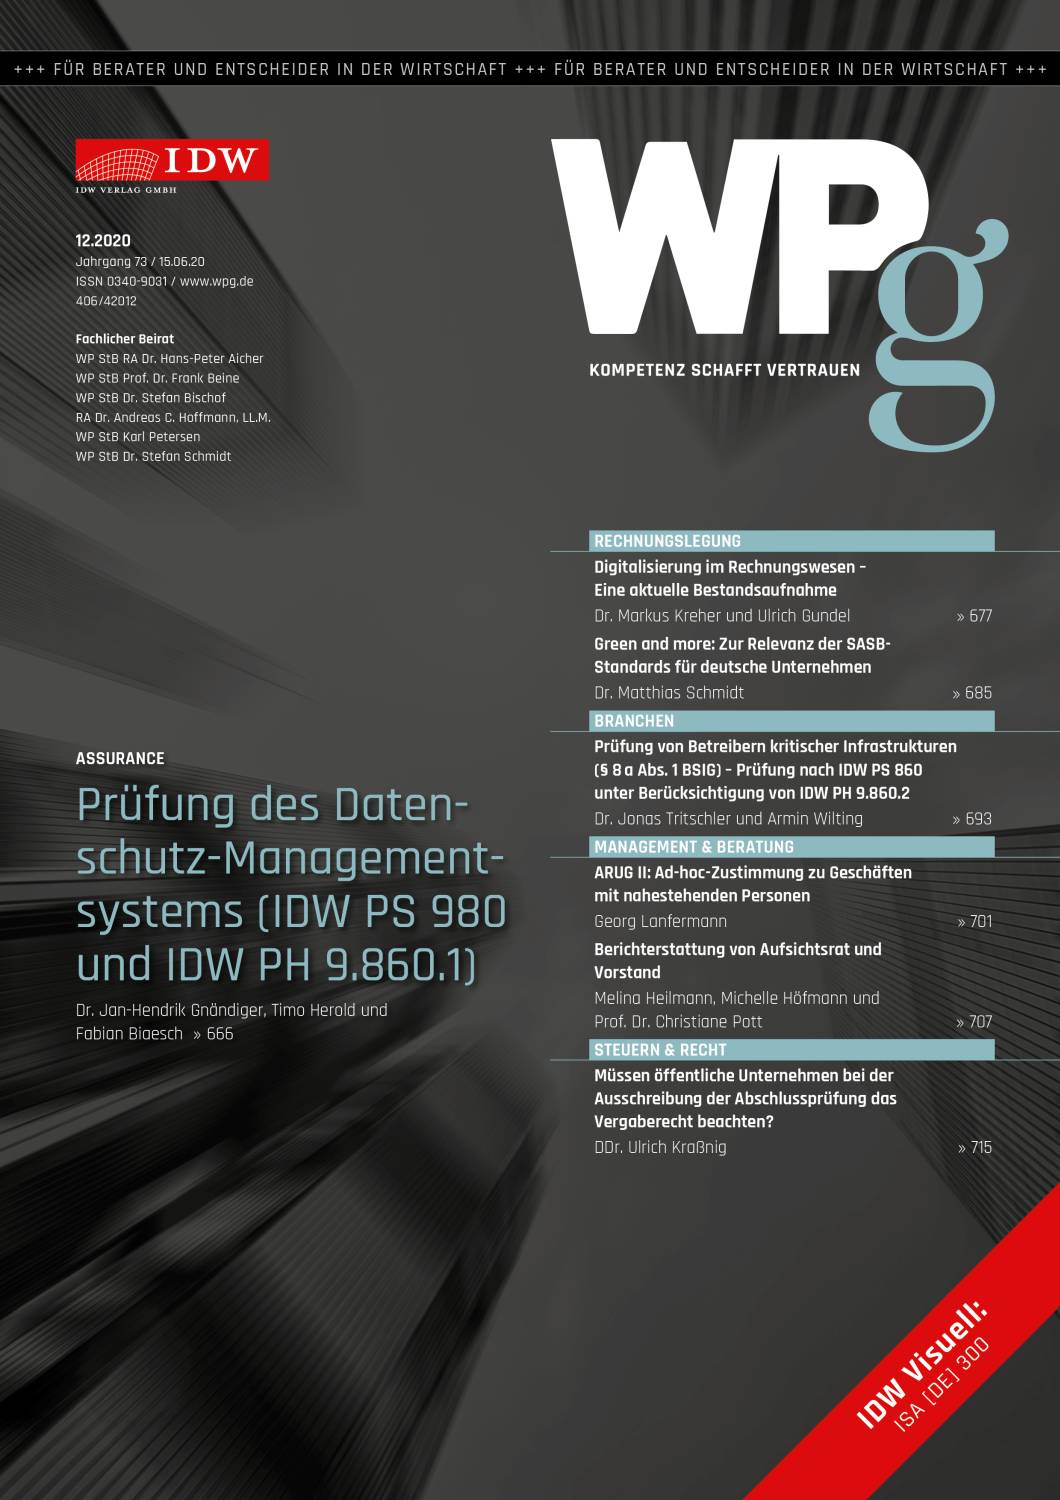 WPg - Die Wirtschaftsprüfung 12/2020